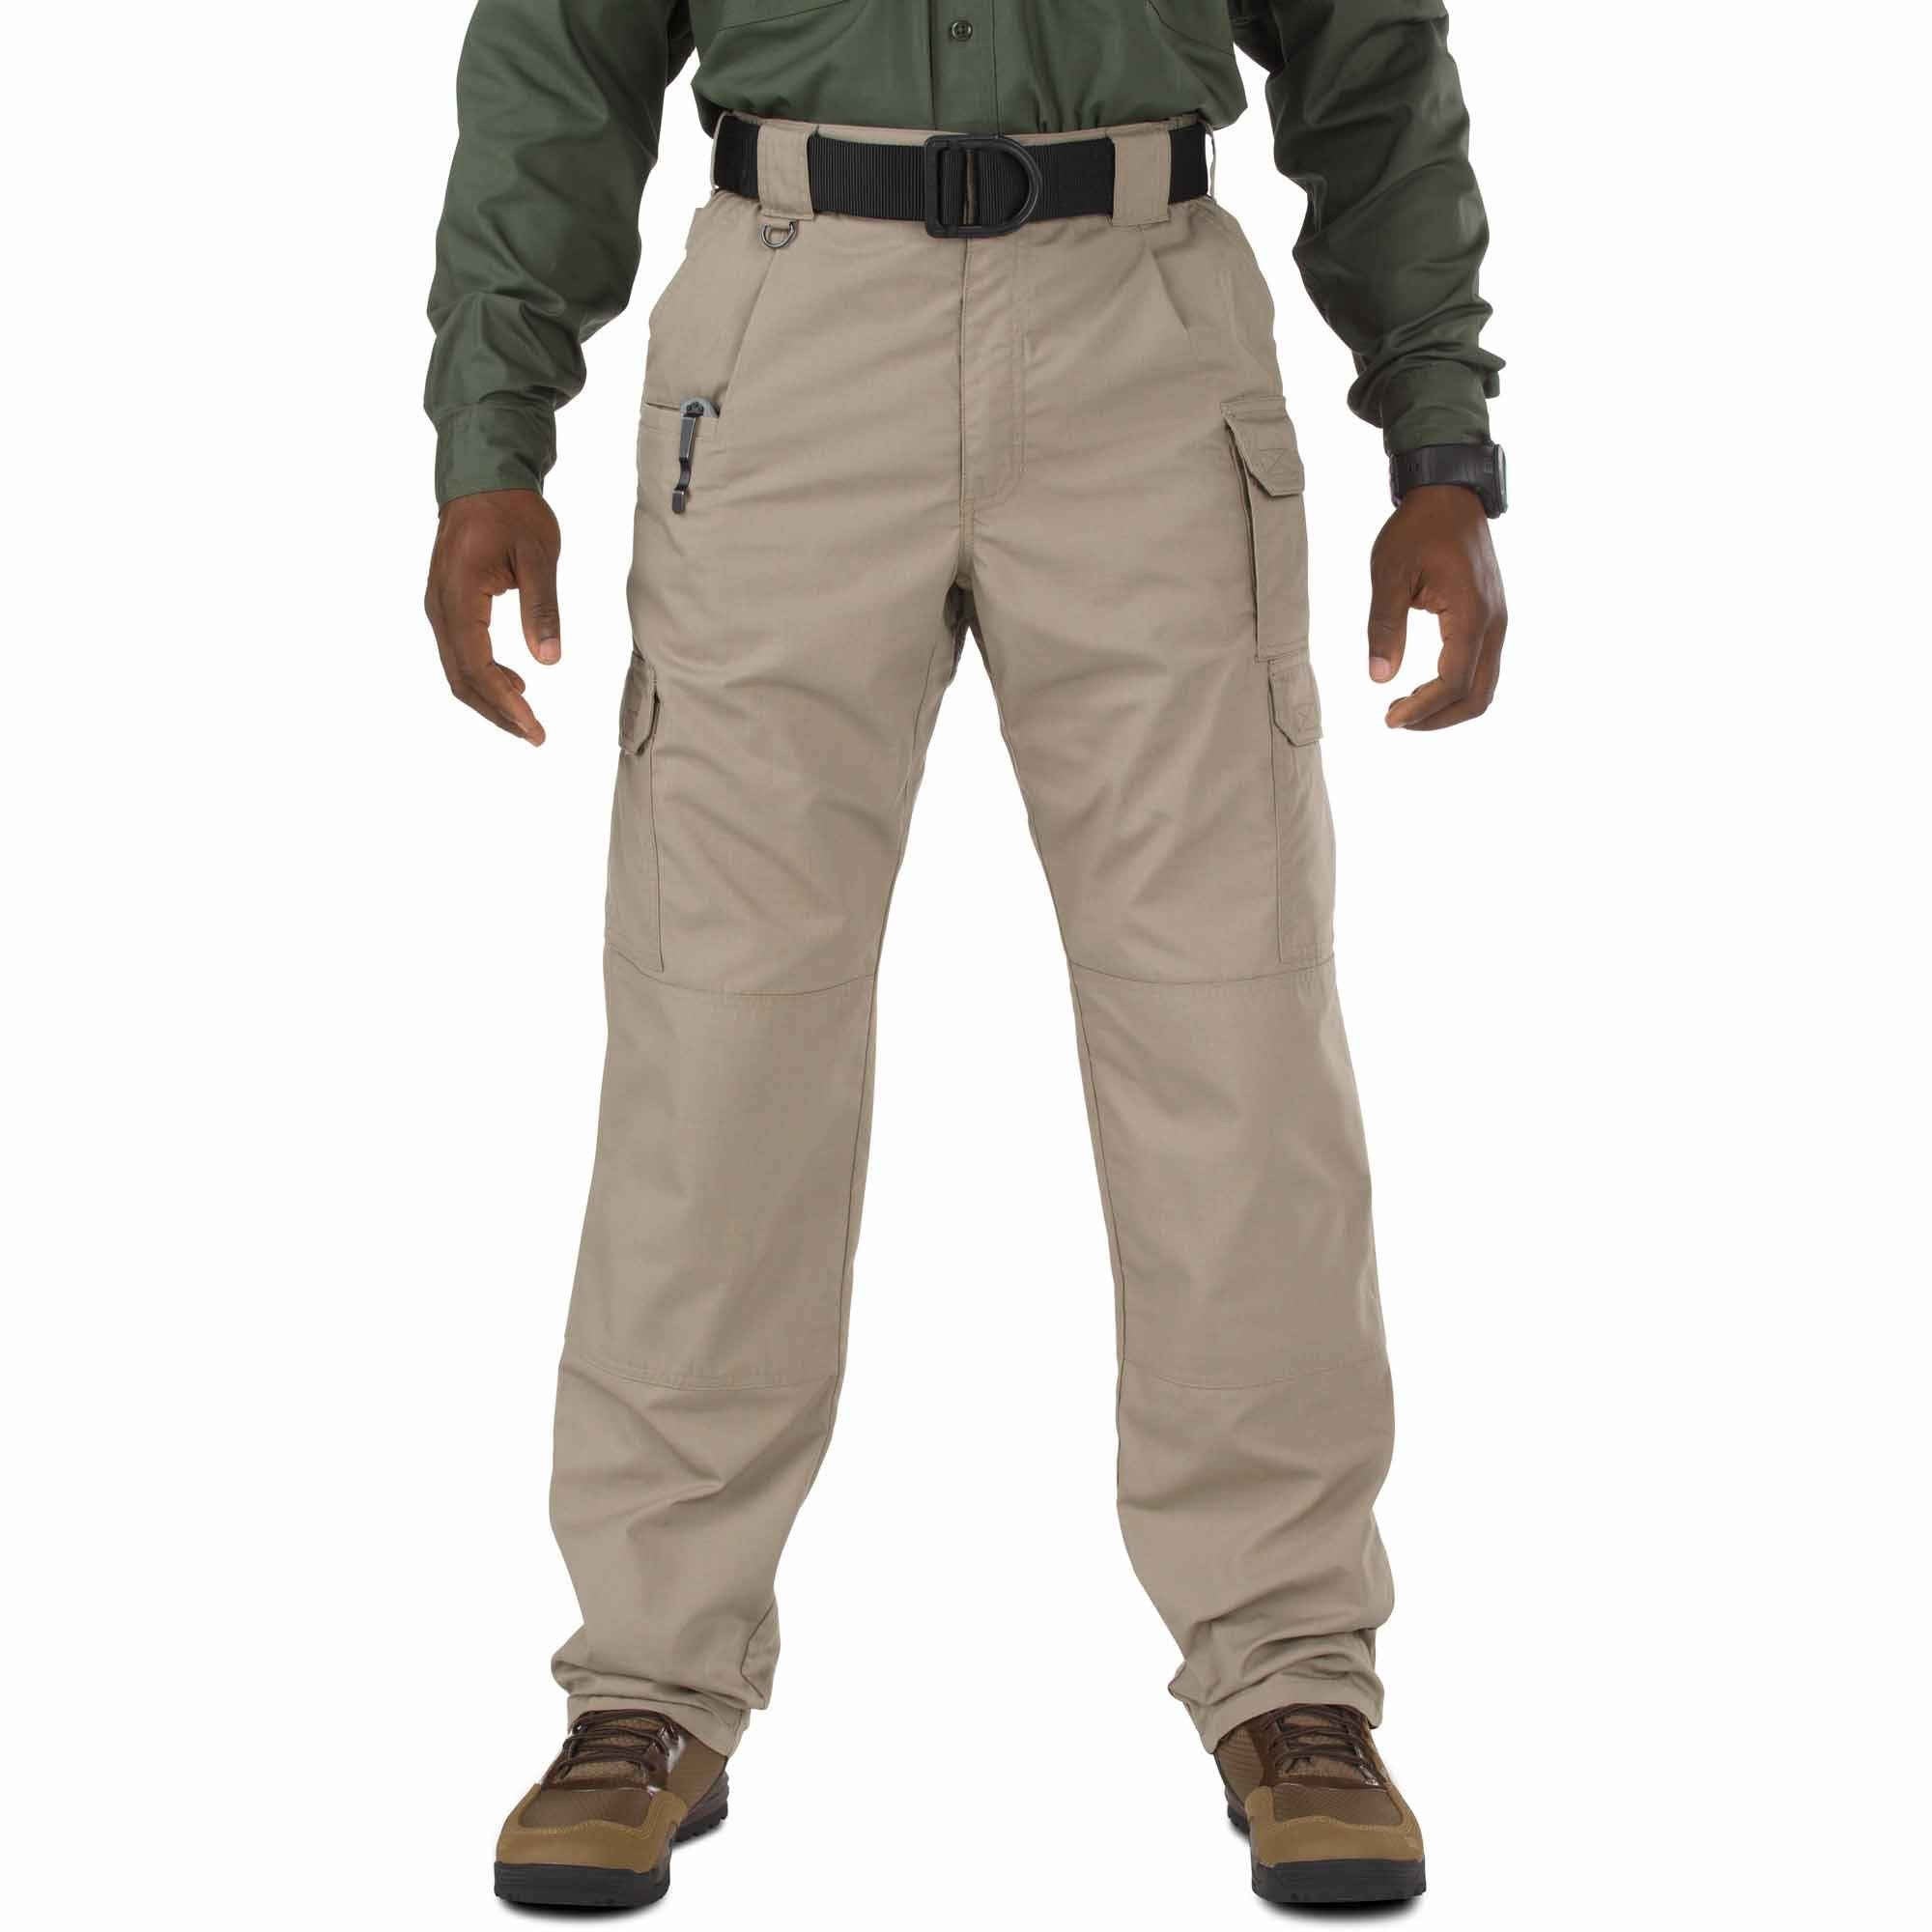 5.11 Tactical Taclite Pro Pants - Stone Pants 5.11 Tactical Tactical Gear Supplier Tactical Distributors Australia